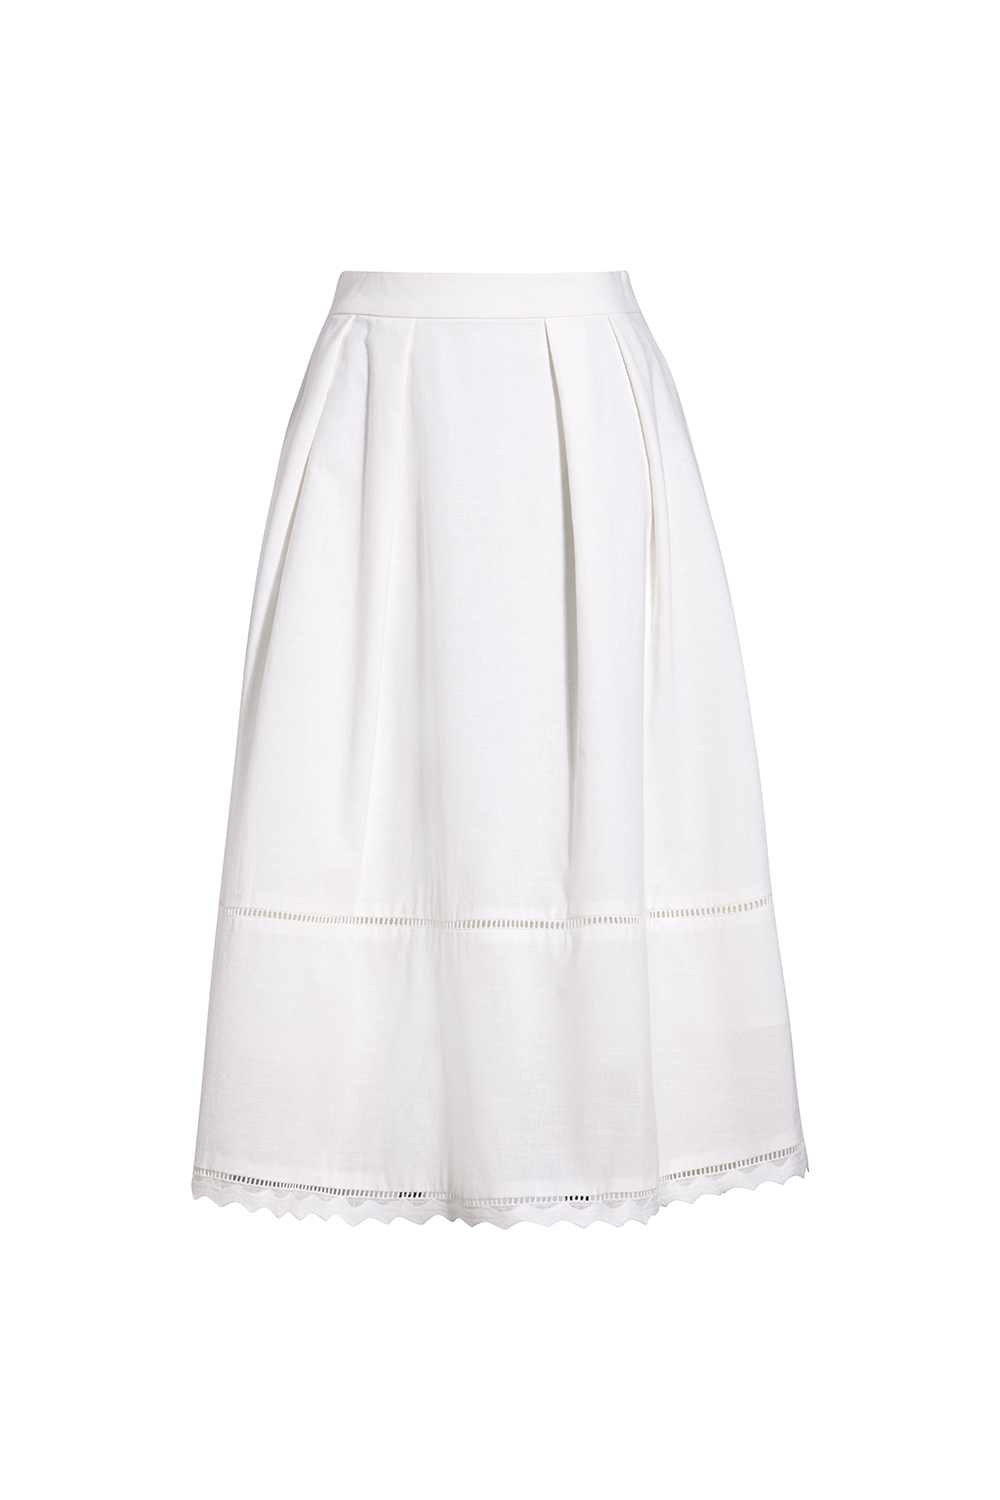 Chân váy midi công sở màu trắng CV05-11 | Thời trang công sở K&K Fashion